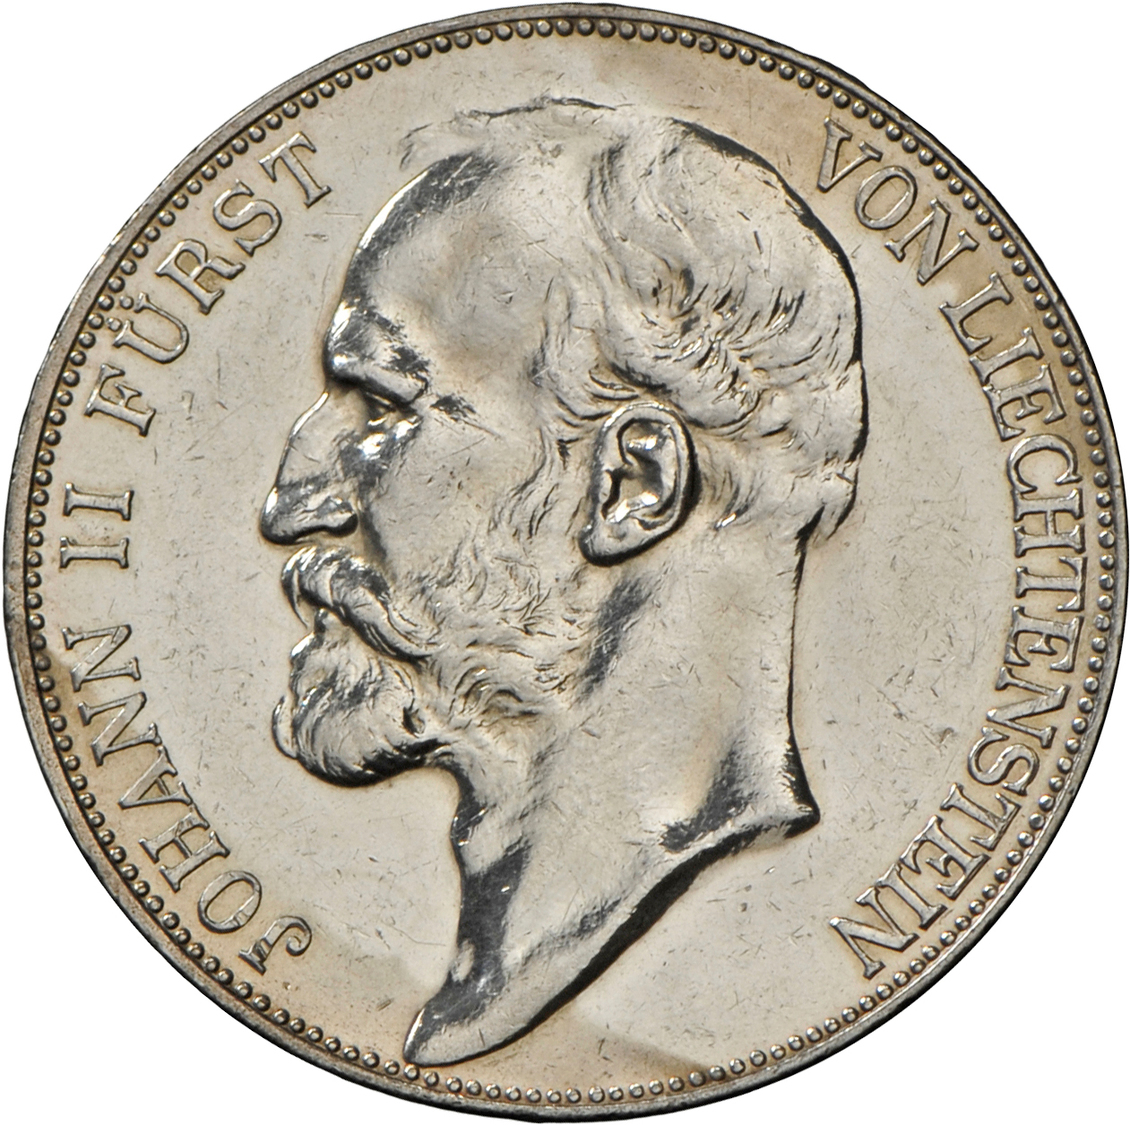 05138 Liechtenstein: Johann II (1858-1929): 5 Franken 1924, KM 10, Divo 104; Selten, Auflage Nur 15.000 Stück !! Portrai - Liechtenstein